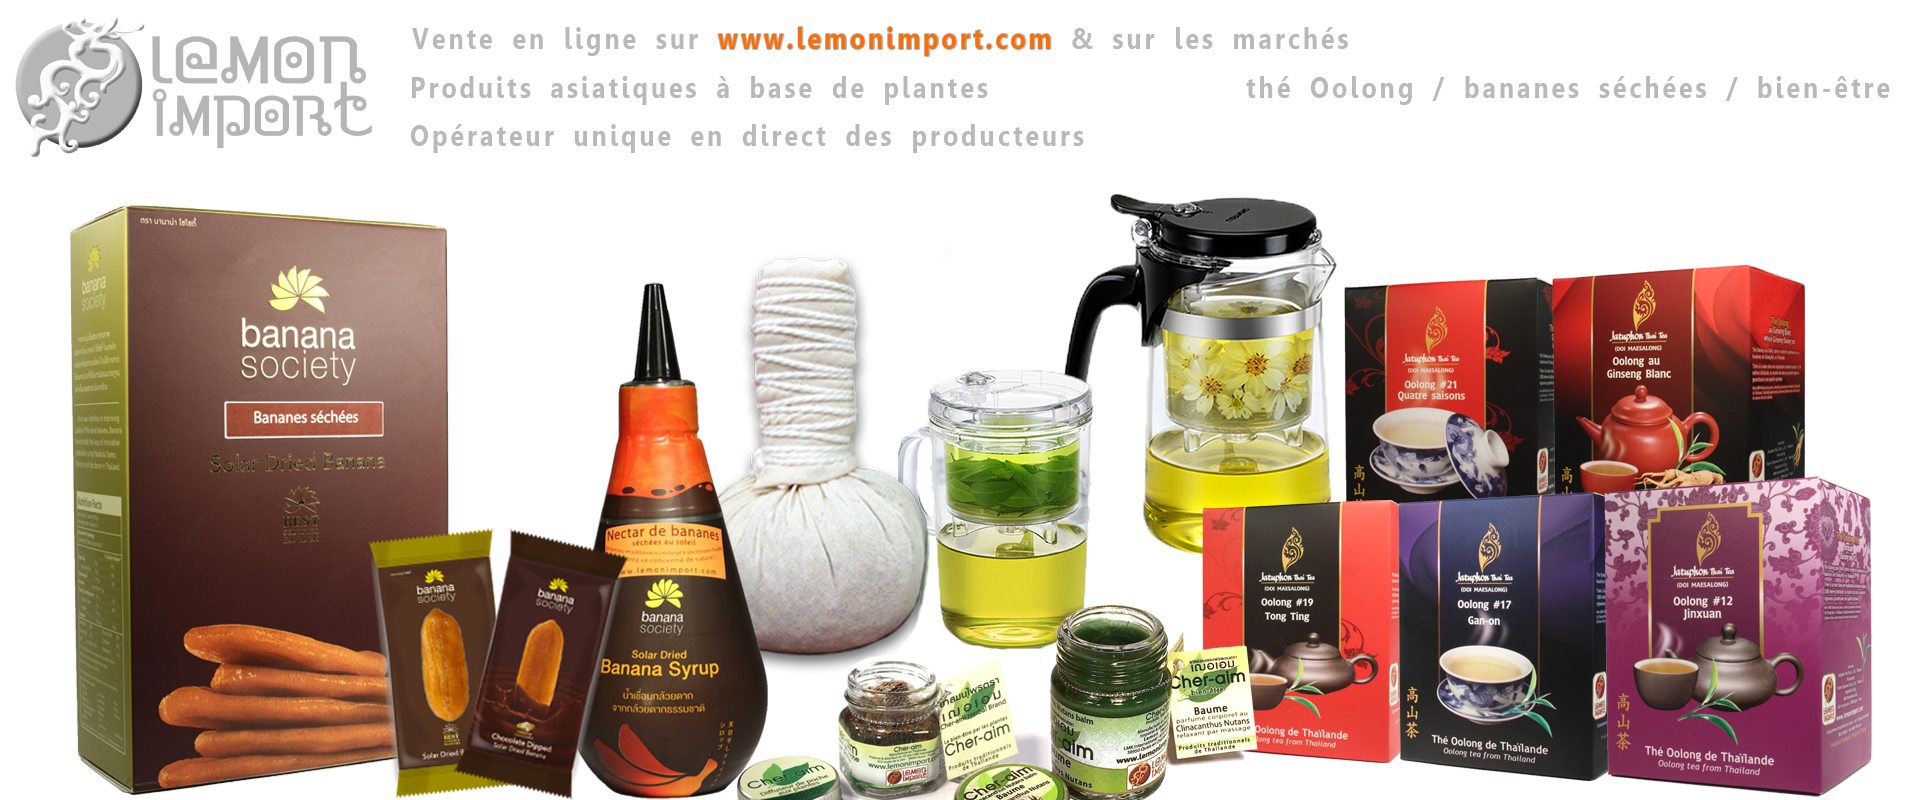 La gamme Lemon Import